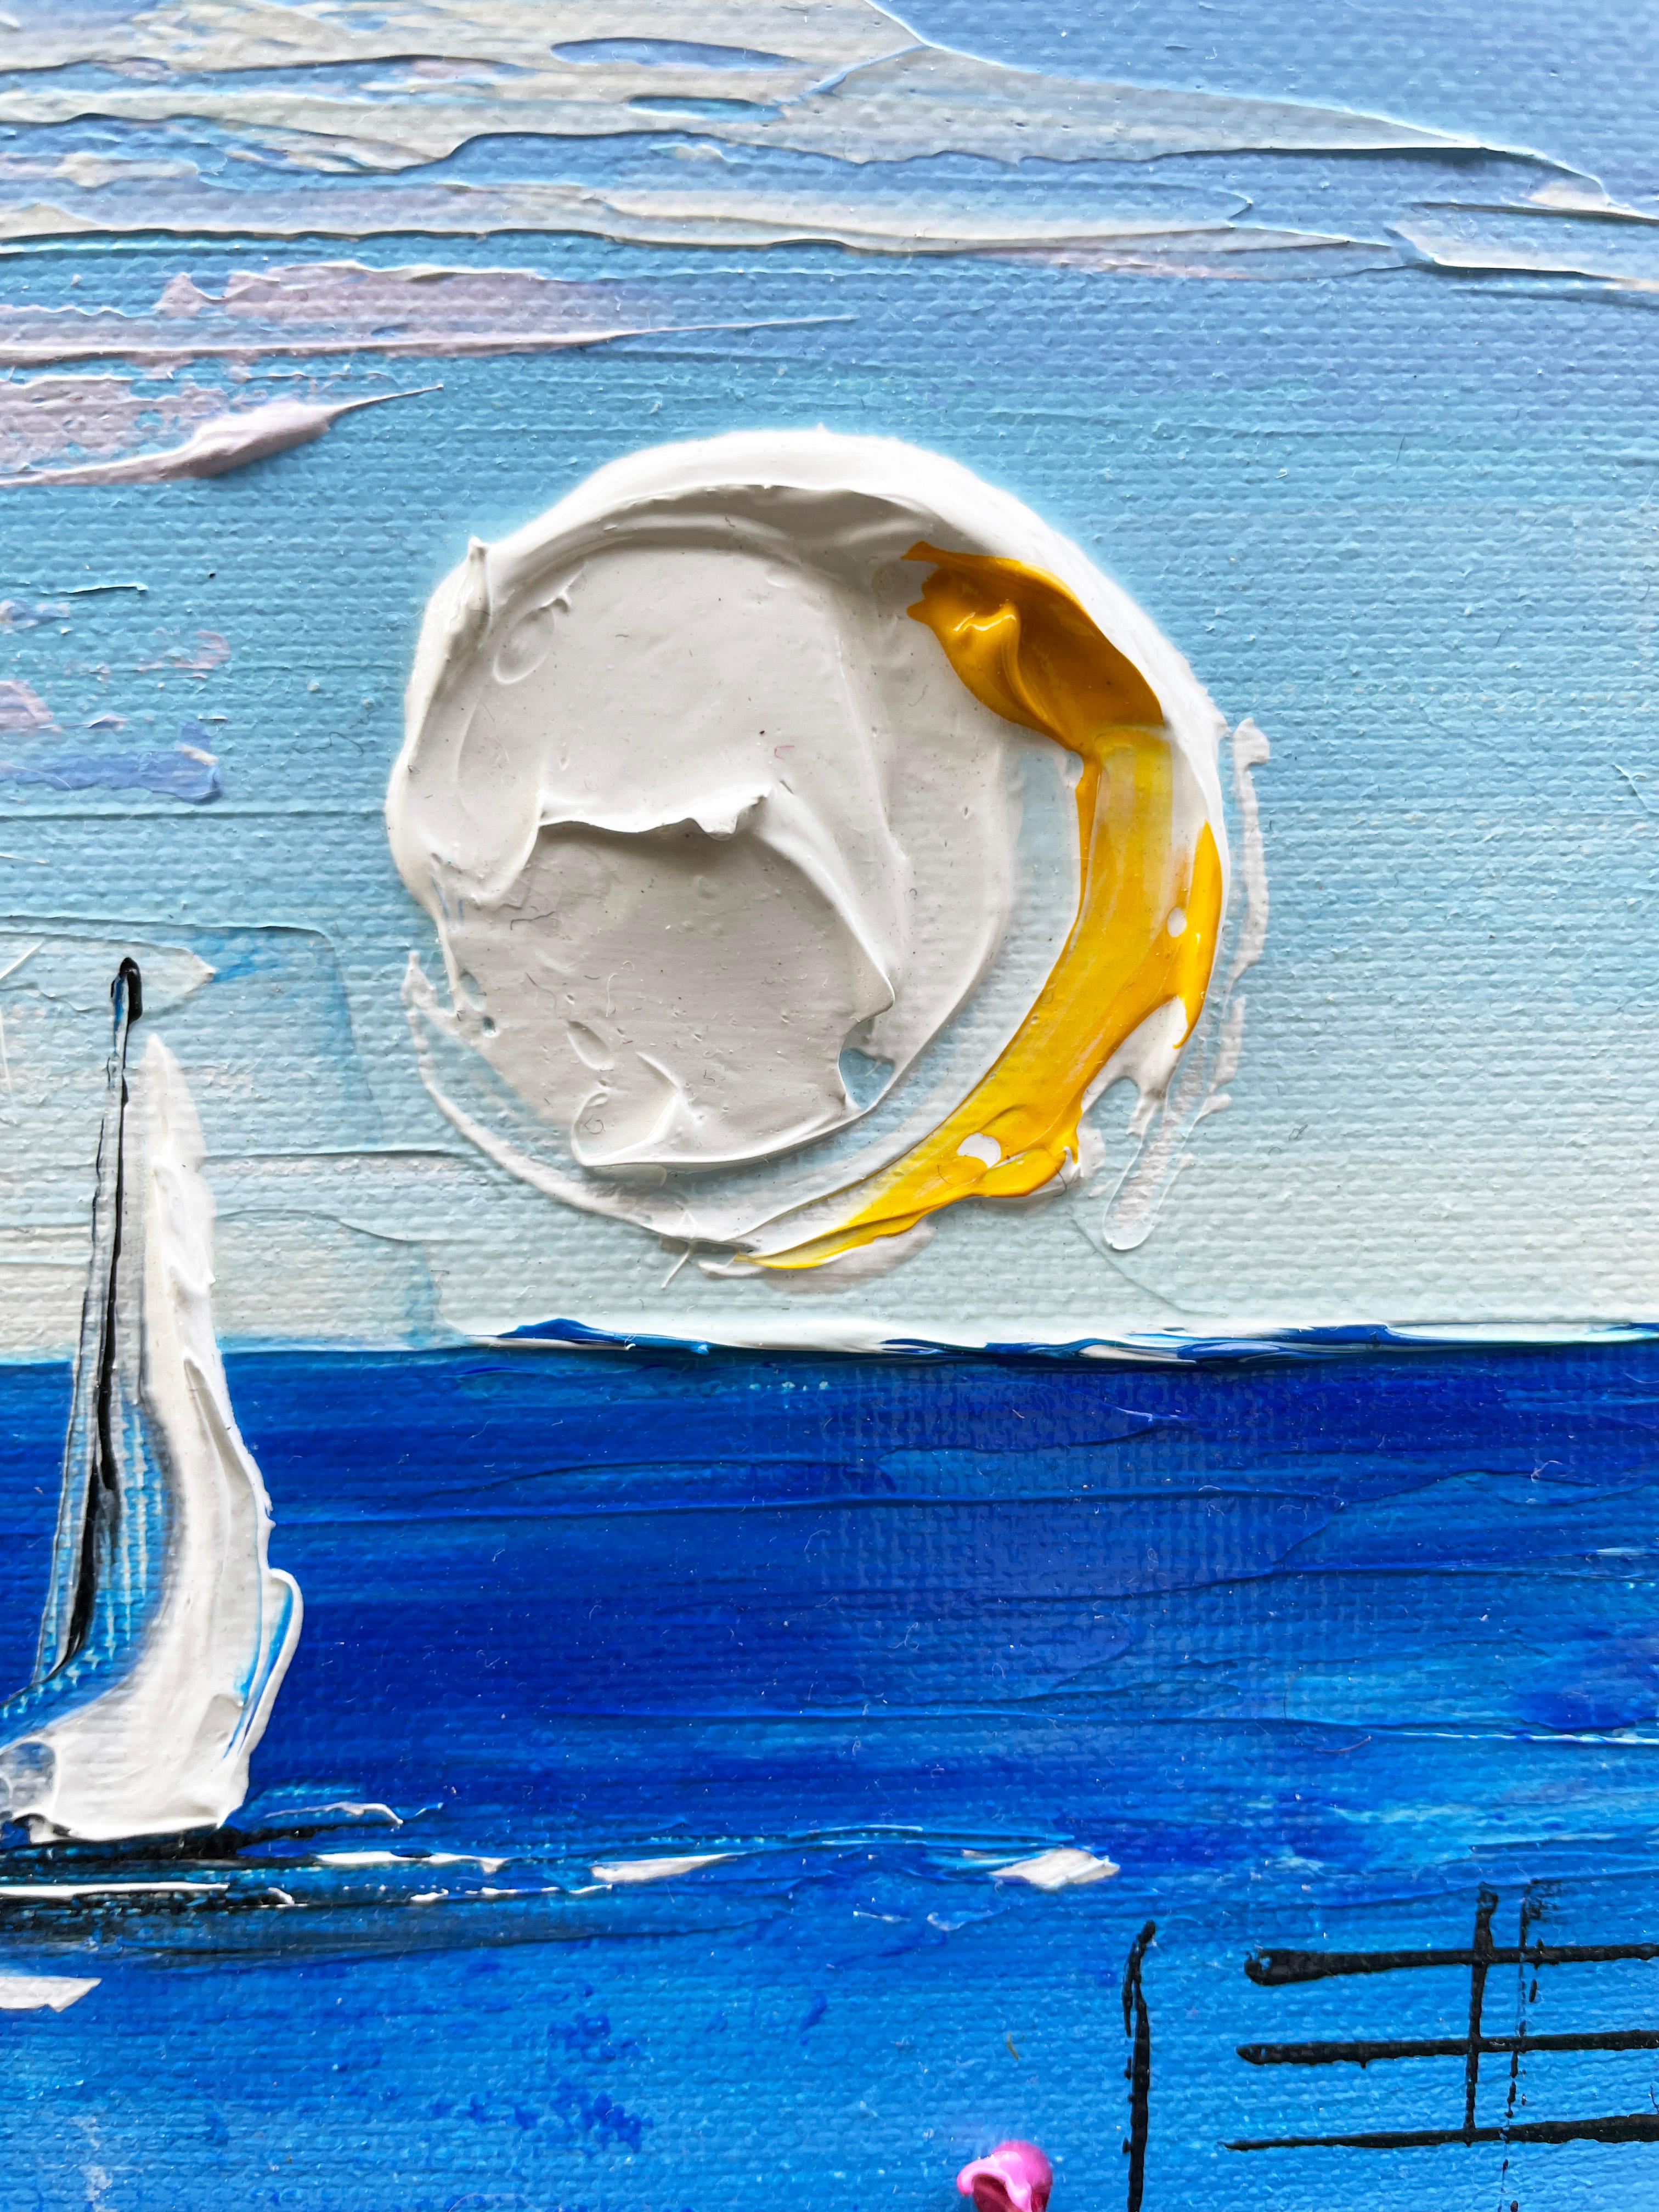 <p>Kommentare der Künstlerin<br>Die Künstlerin Lisa Elley lässt sich von dem niederländischen postimpressionistischen Maler Vincent van Gogh inspirieren und kombiniert diese Inspiration mit der leuchtenden Farbpalette der Monterey Bay, während die